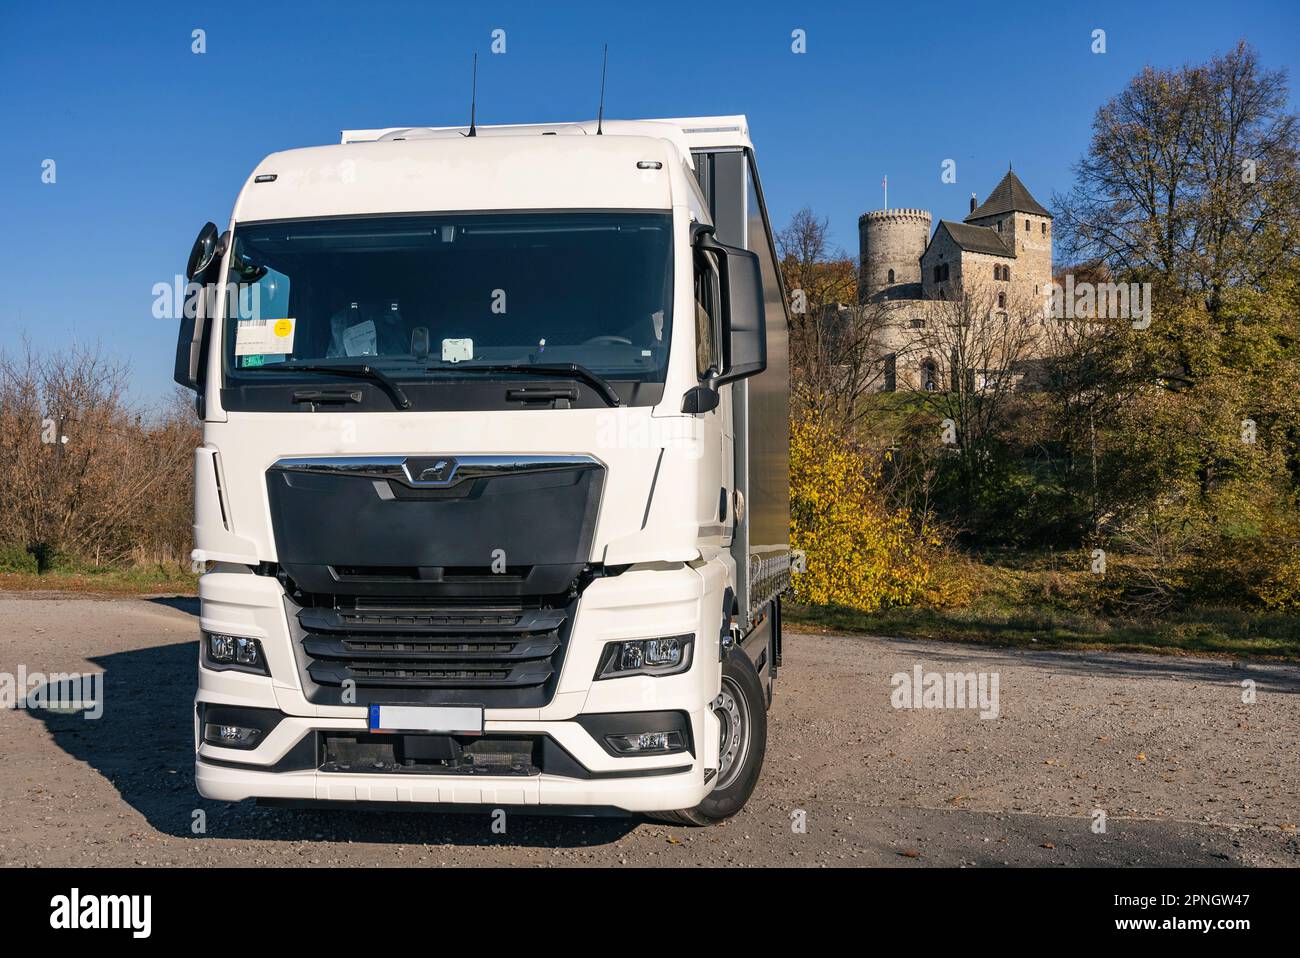 Lastwagen auf dem Hintergrund der Burg. LKW mit Auflieger in grauer Farbe. LKW-Foto für Kalender. Autotransport. Stockfoto